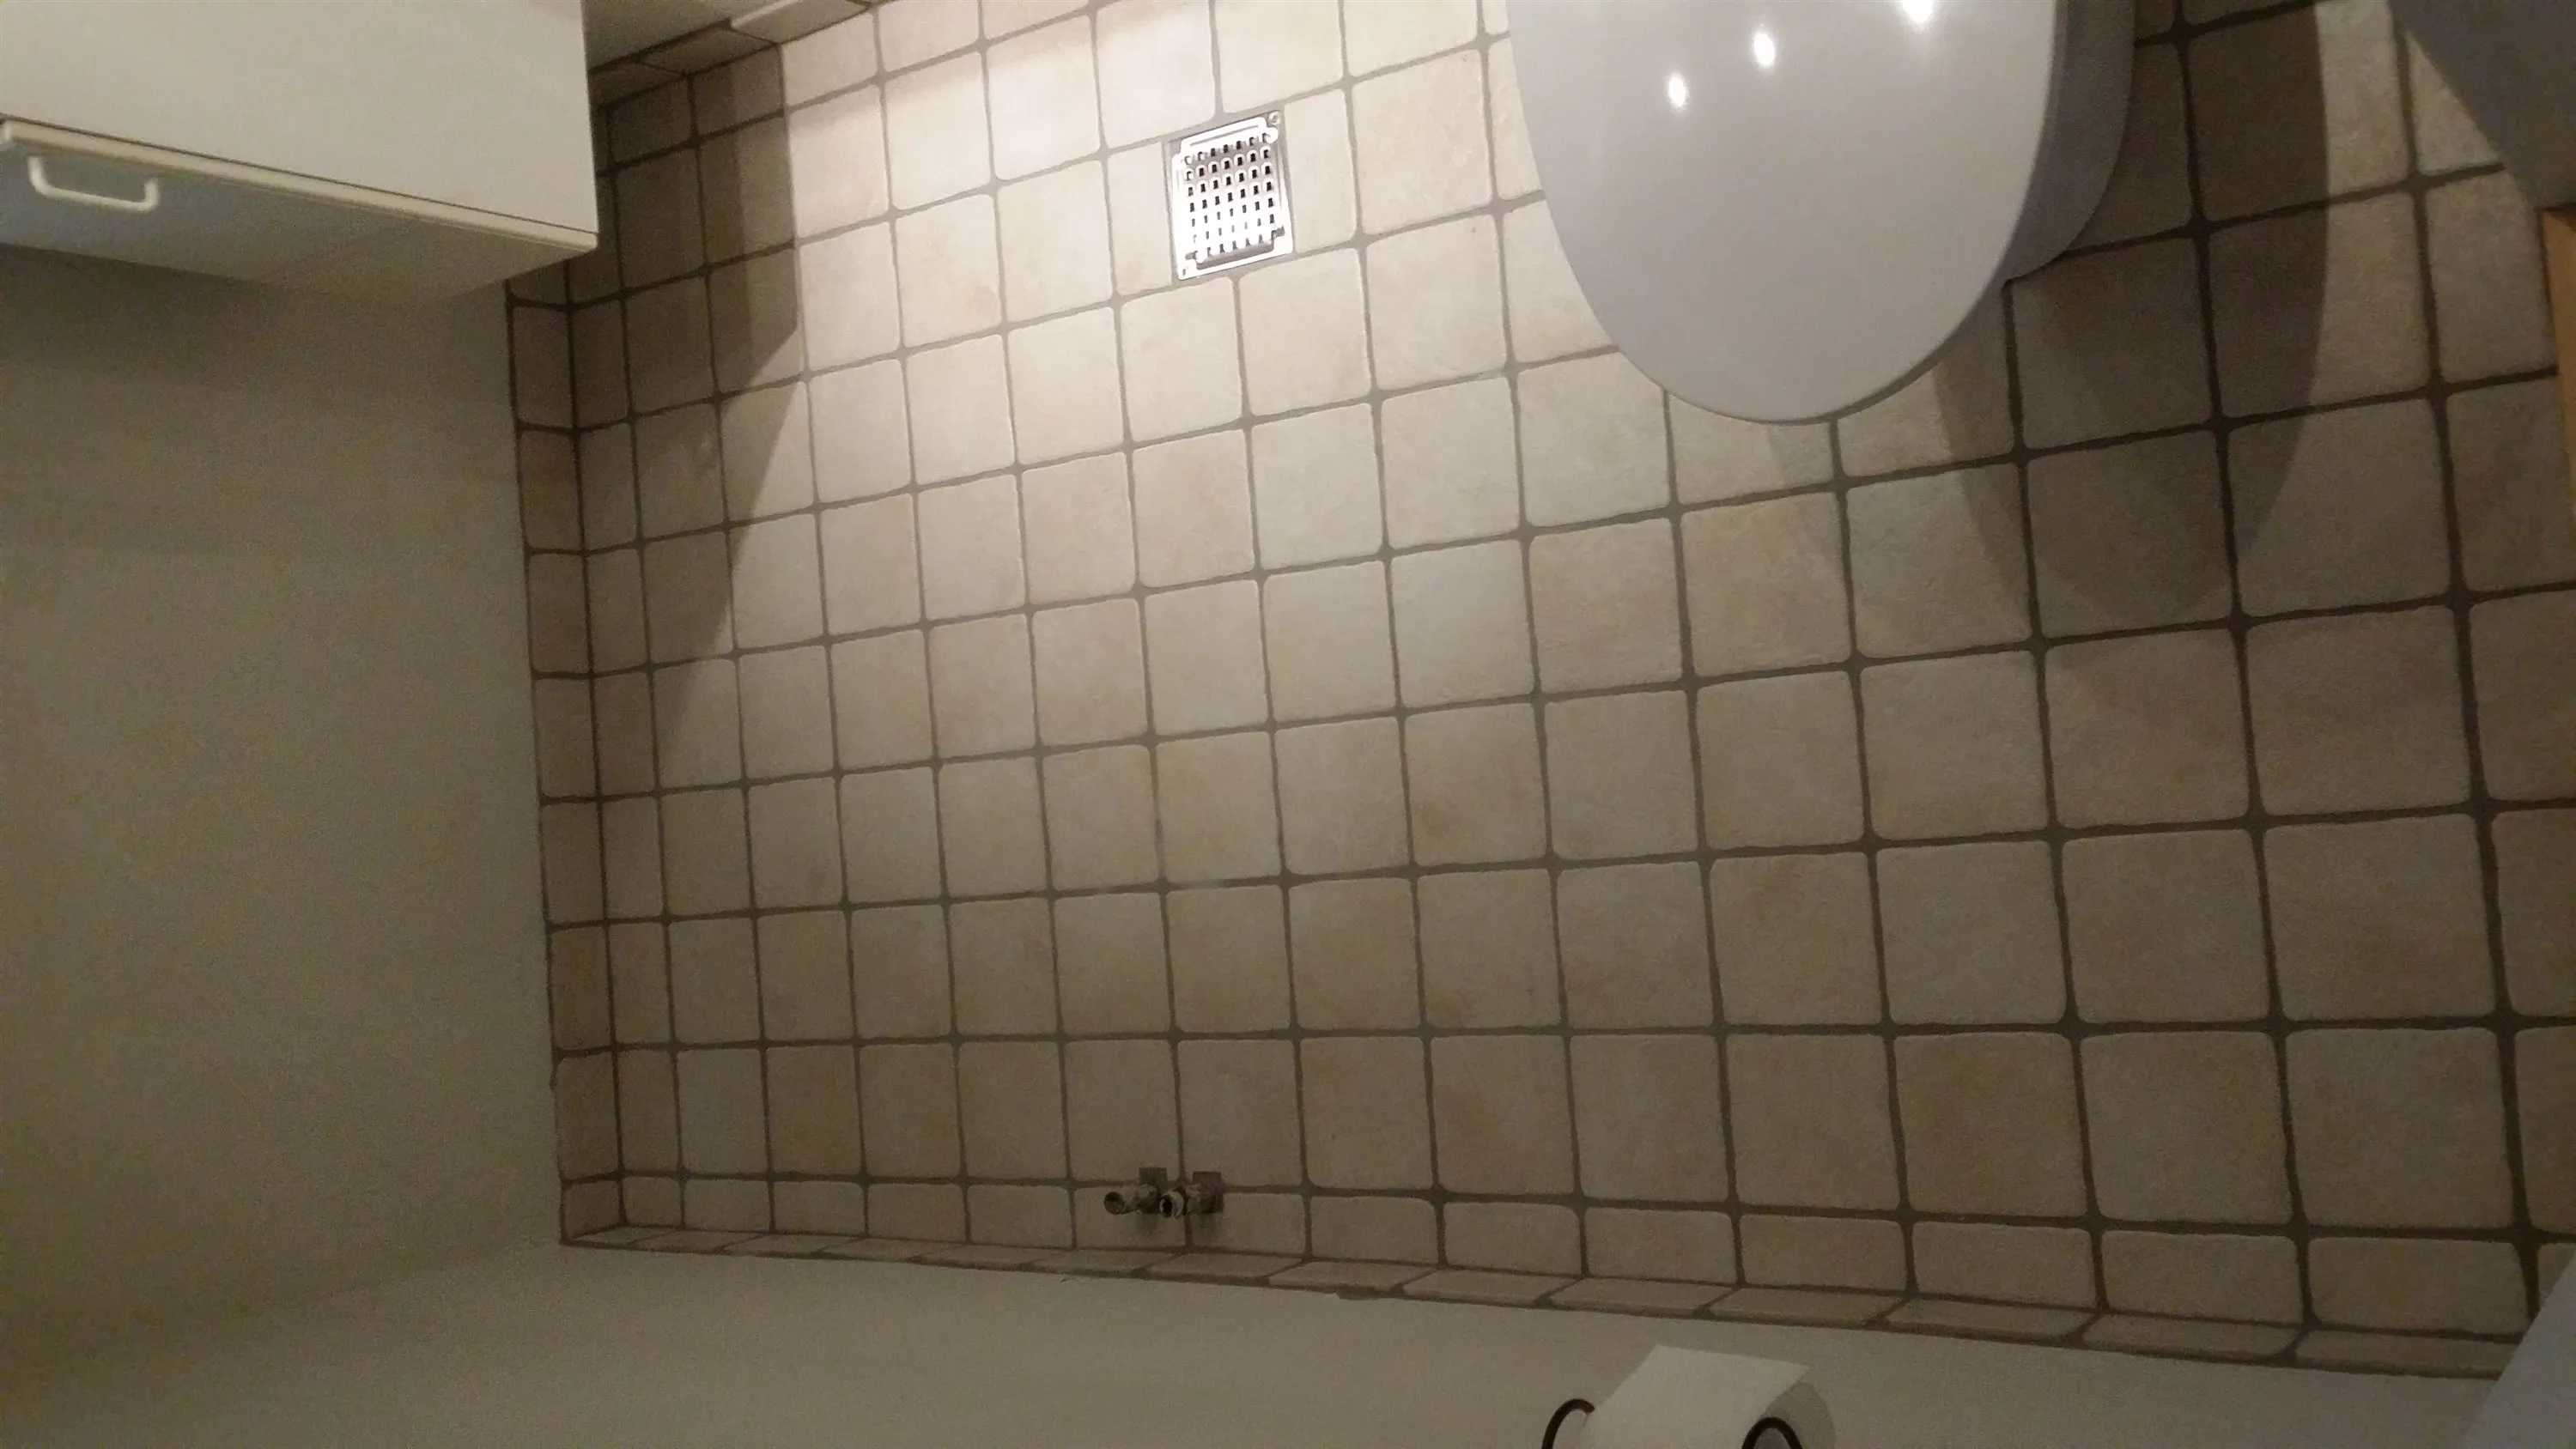 Reetablering af gulv i badeværelse efter en vandskade - Håndværker.dk